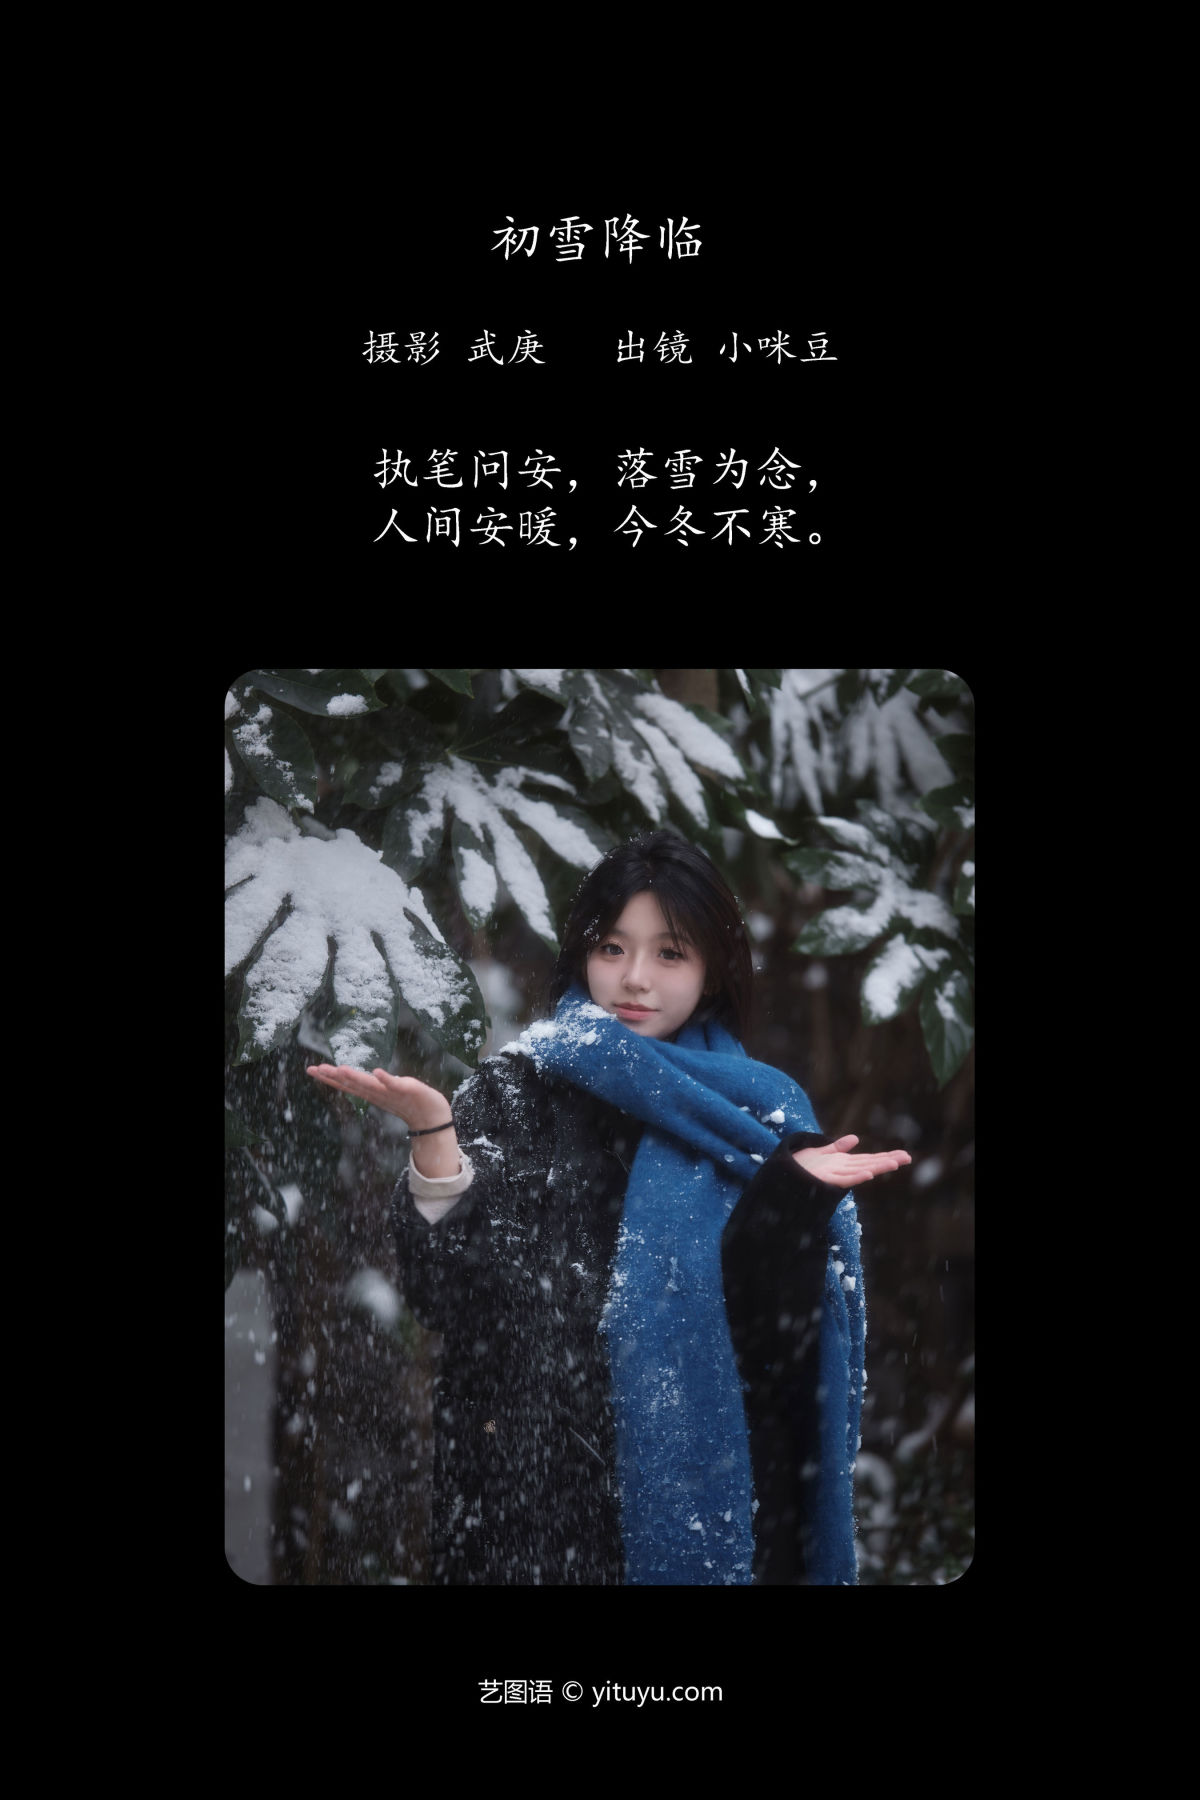 武庚_小咪豆《初雪降临》美图作品图片2